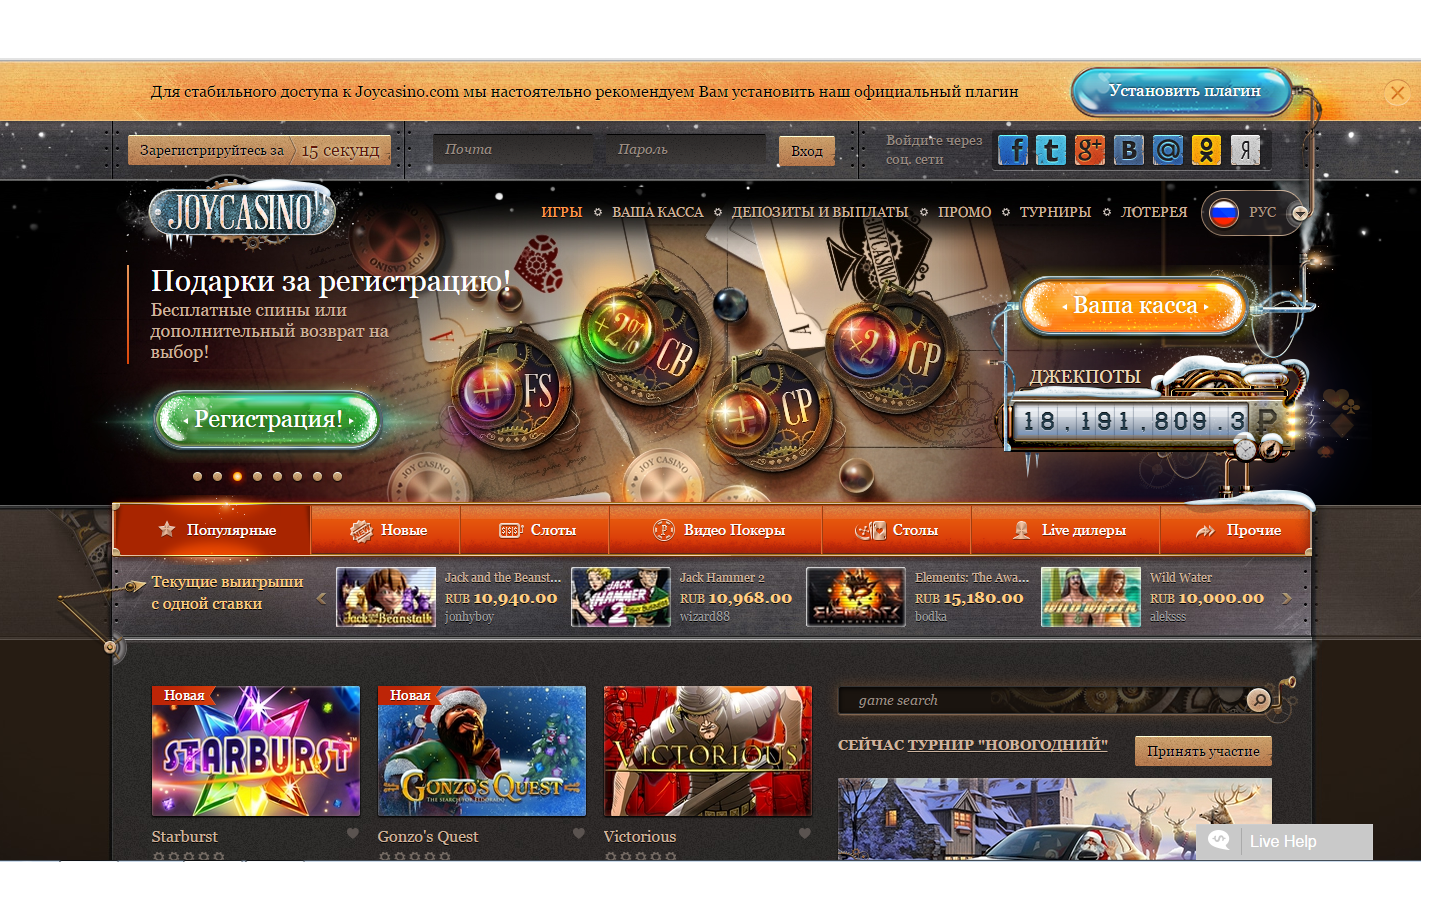 Casino joycasino отзывы игроков официальный сайт покердом a joycasino com